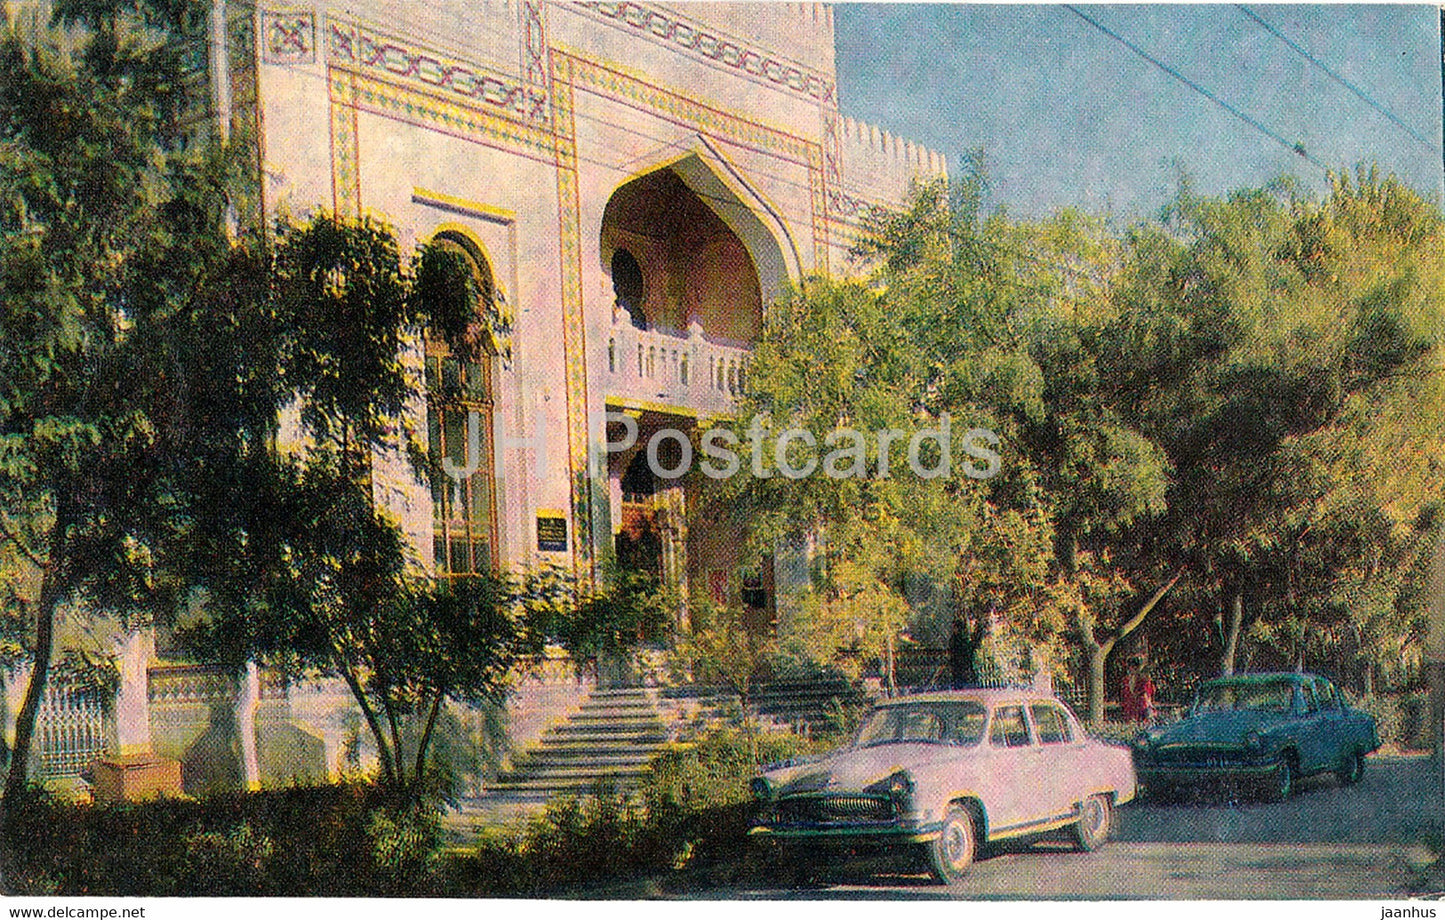 Chisinau - State Historical Museum - car Volga - 1970 - Moldova USSR - unused - JH Postcards